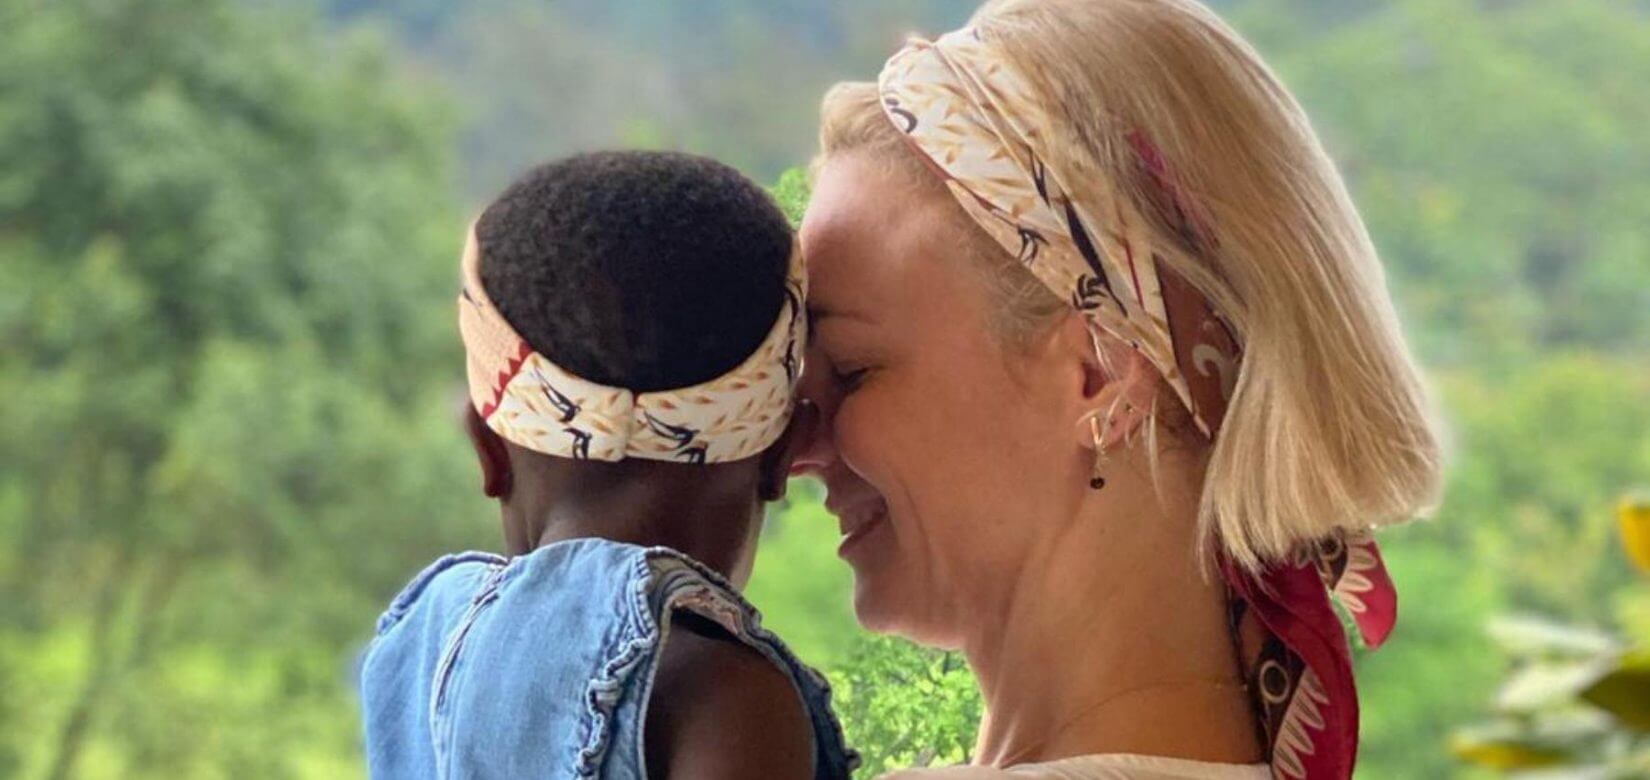 H Χριστίνα Κοντοβά επιστρέφει στην Ουγκάντα για το κοριτσάκι της - Ποια αγαπημένα πρόσωπα έχει μαζί της;